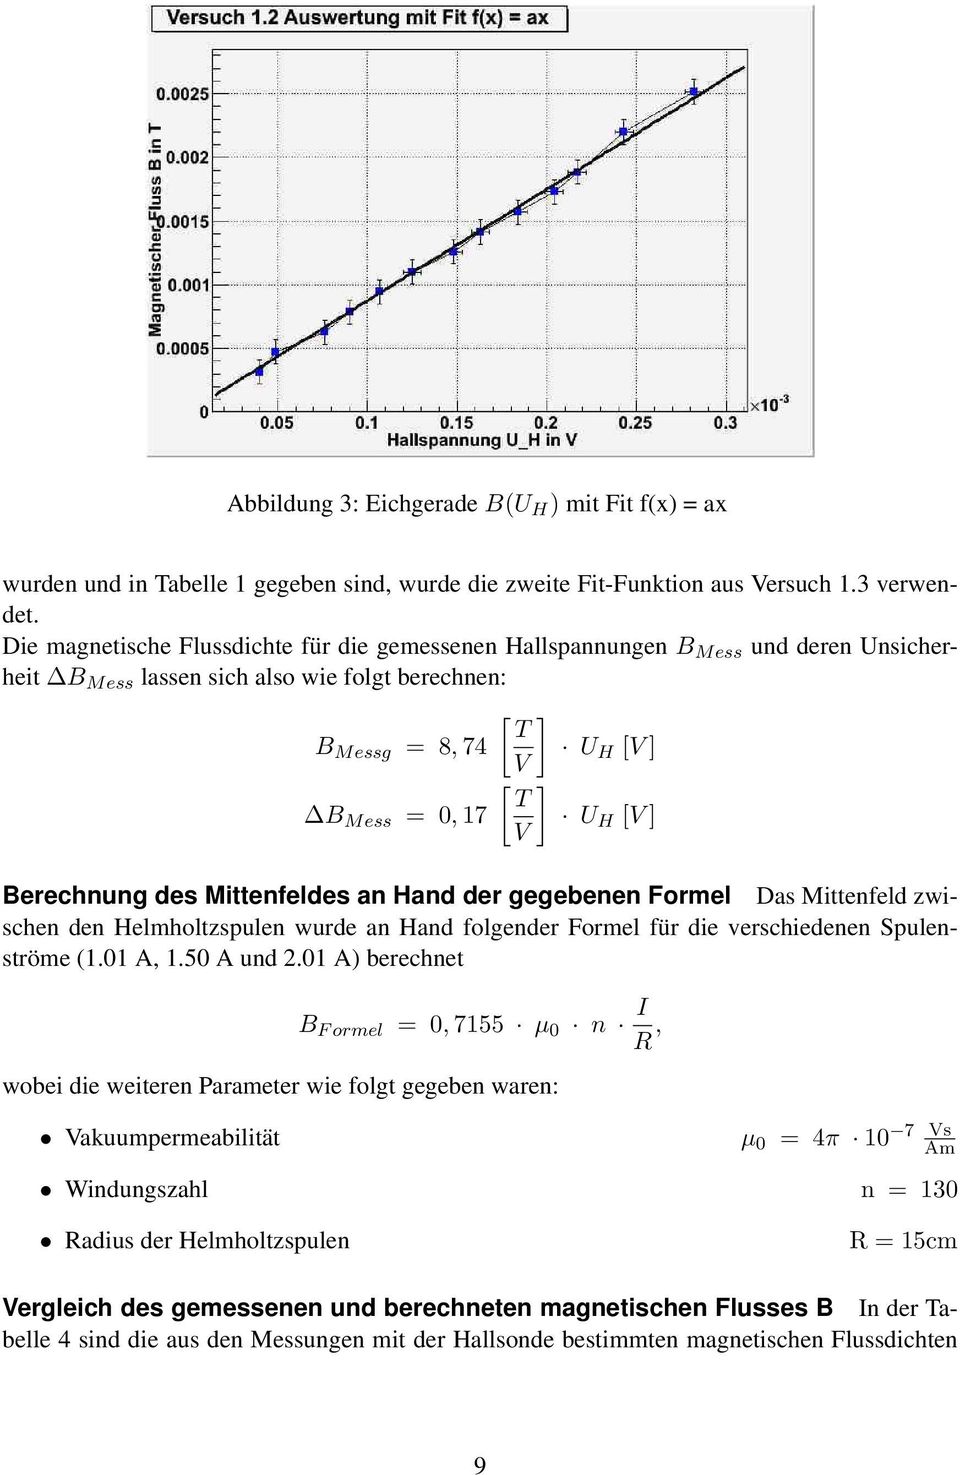 V Berechnung des Mittenfeldes an Hand der gegebenen Formel Das Mittenfeld zwischen den Helmholtzspulen wurde an Hand folgender Formel für die verschiedenen Spulenströme (1.01 A, 1.50 A und 2.